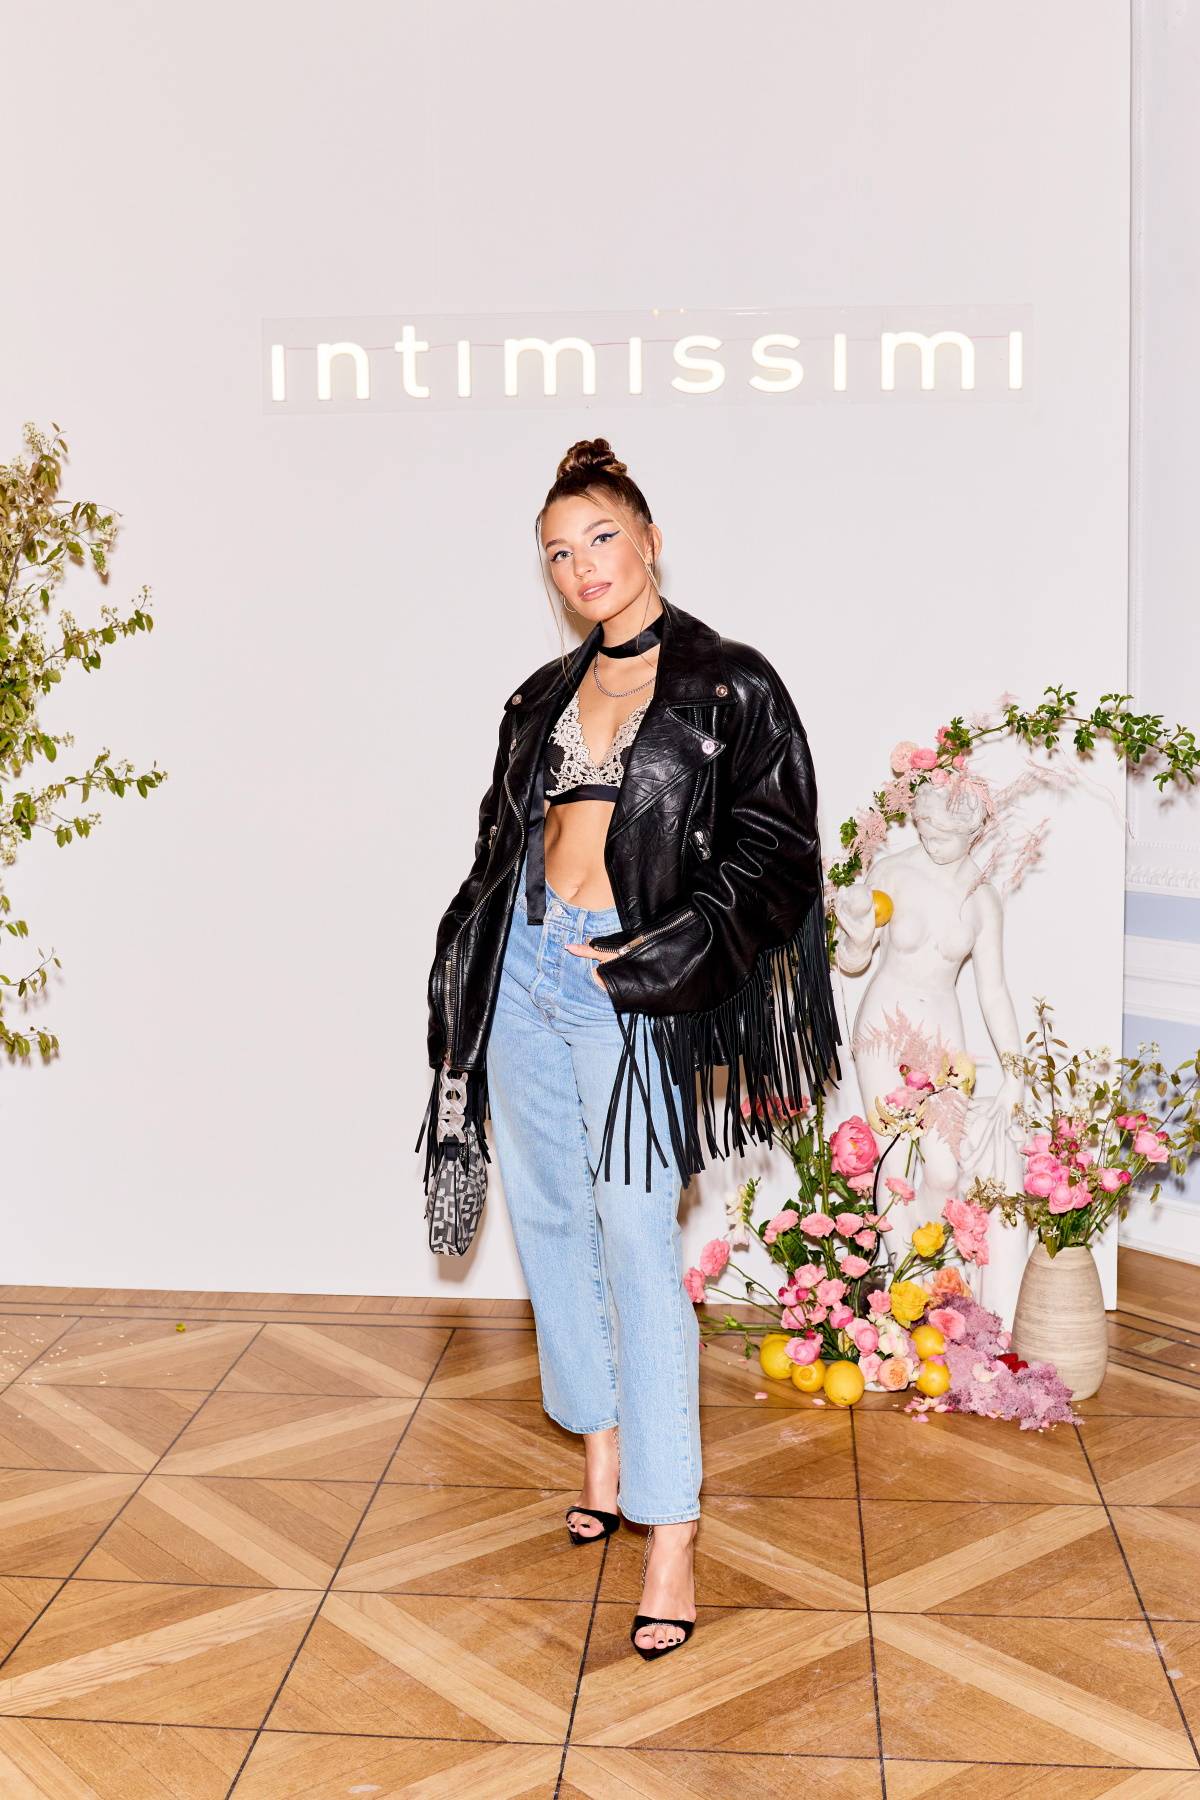 Intimissimi świętuje premierę kolekcji wiosna-lato 2023, której gwiazdą została Jennifer Lopez. Uroczysta premiera nowych projektów Intimissimi odbyła się w warszawskim hotelu Bellotto, który z tej okazji zamieniono w willę nad Morzem Śródziemnym.